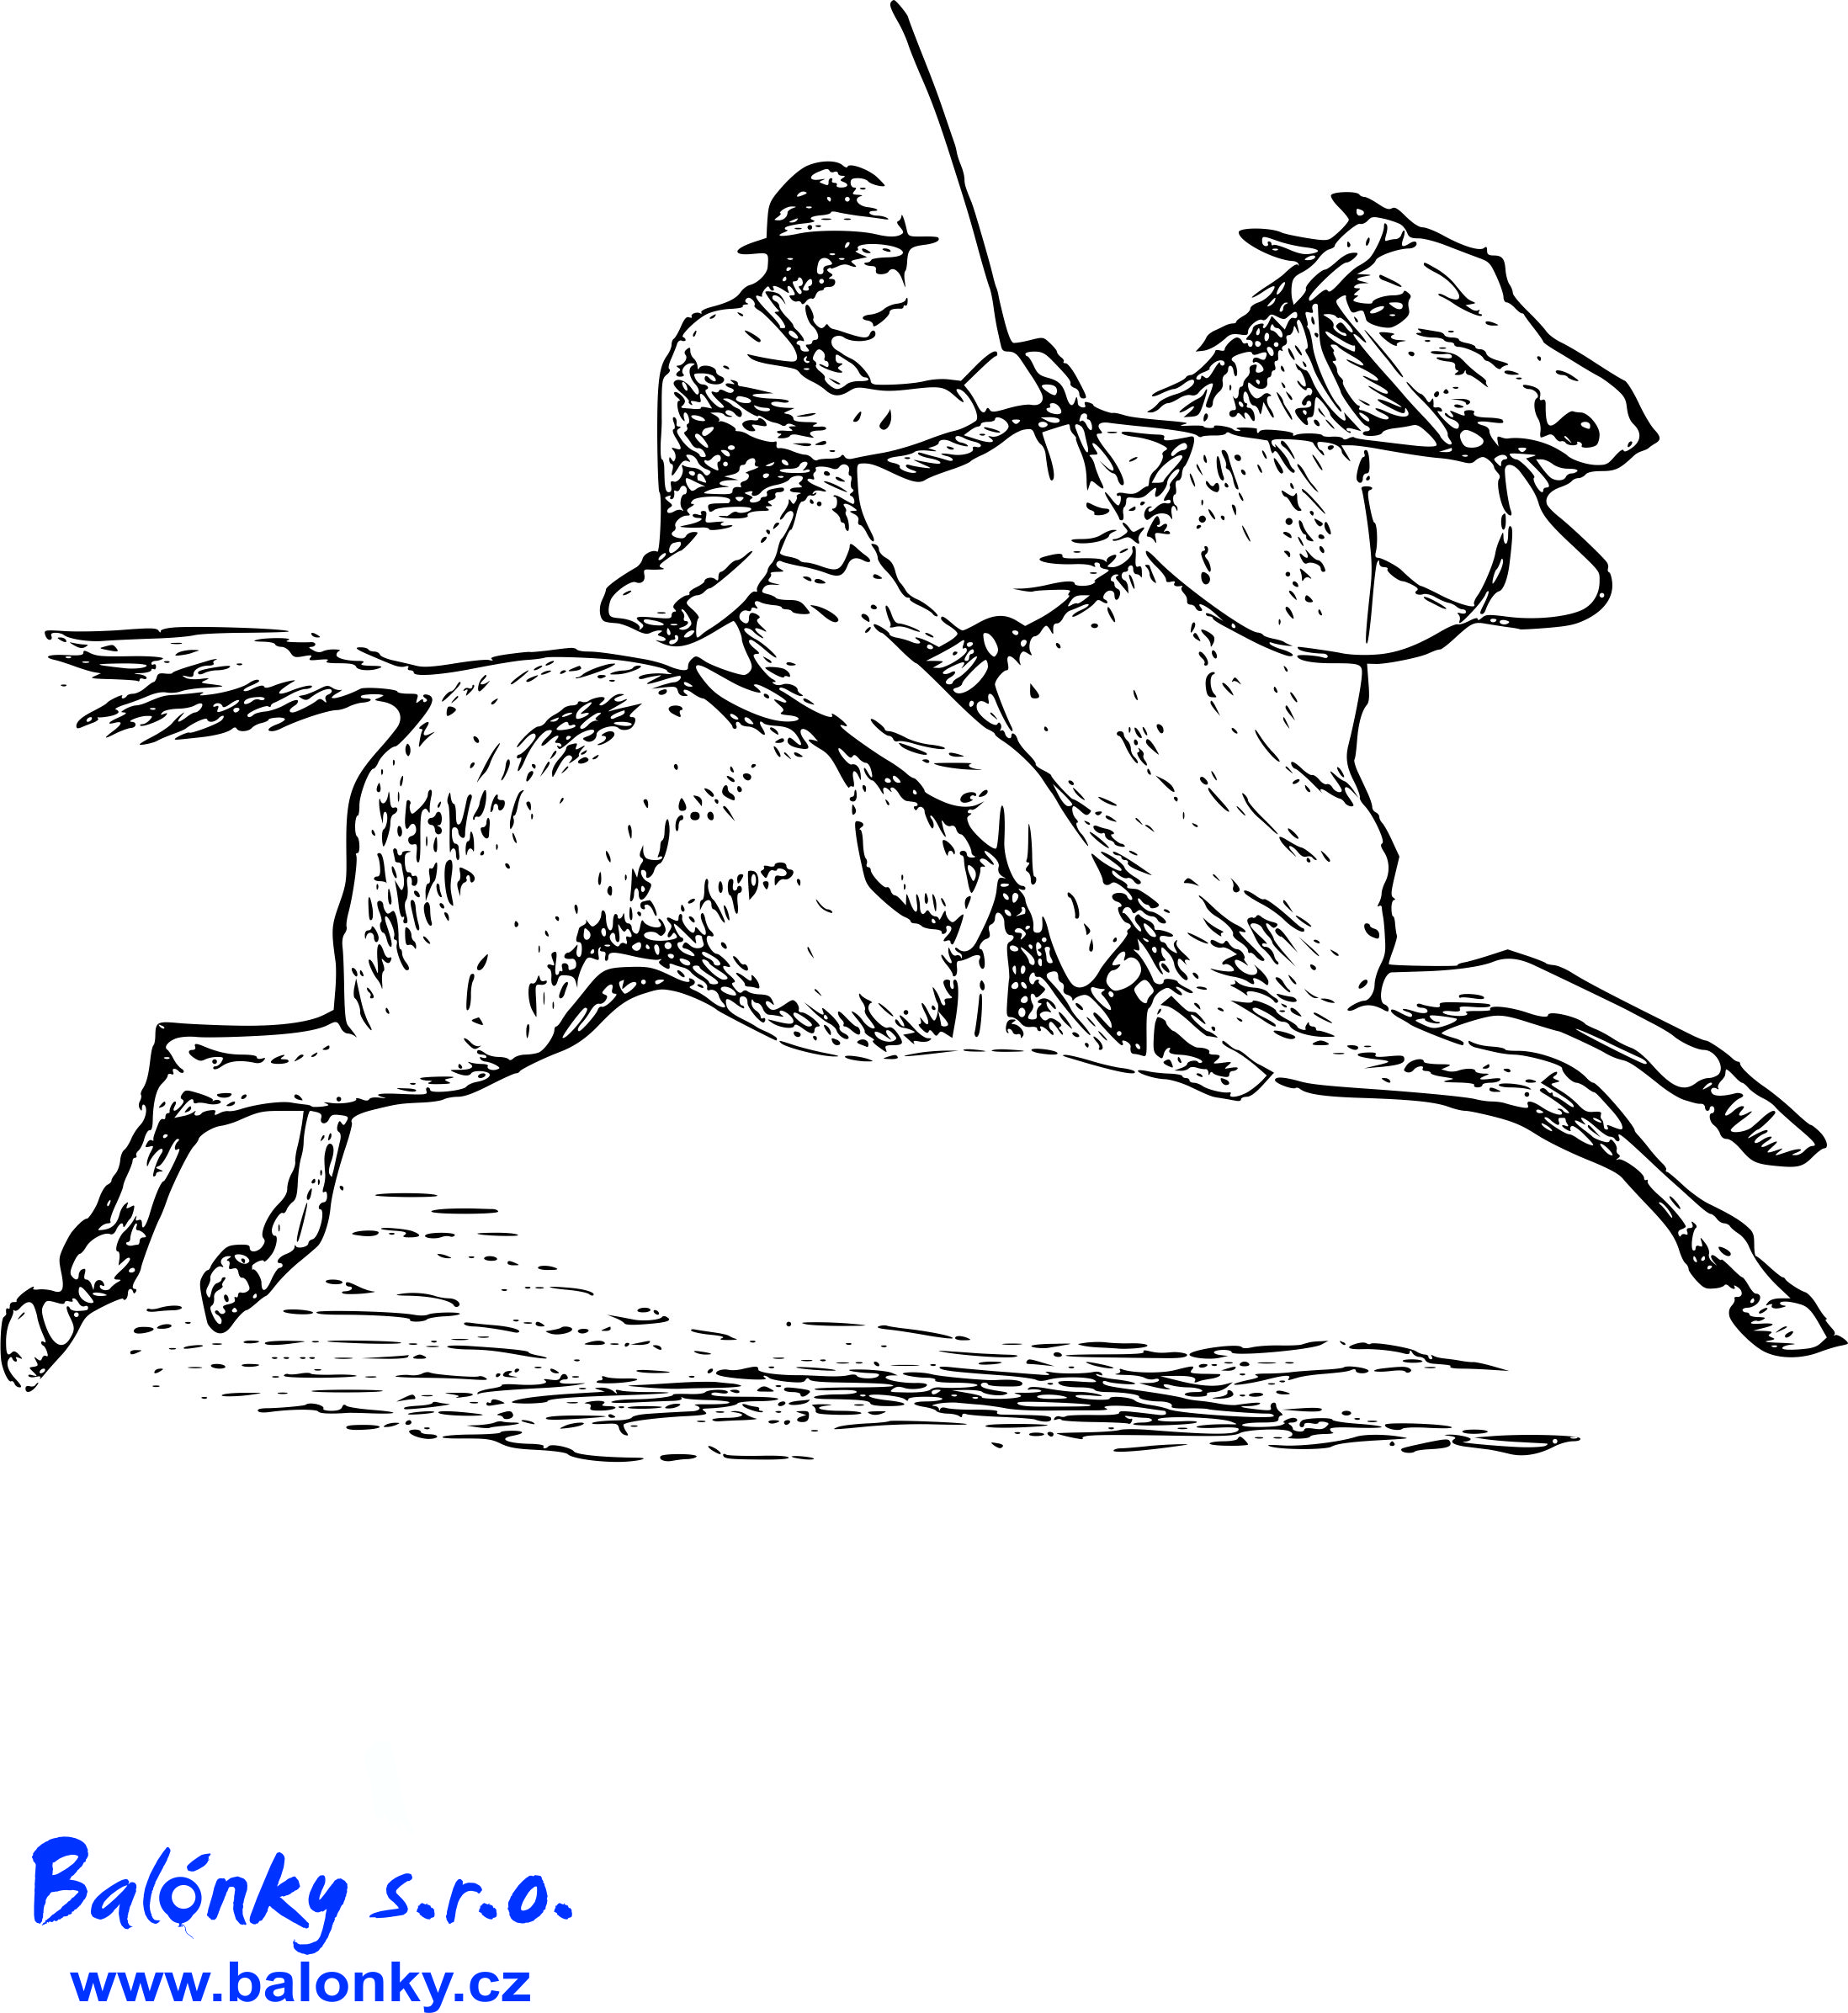 Человек на коне рисунок